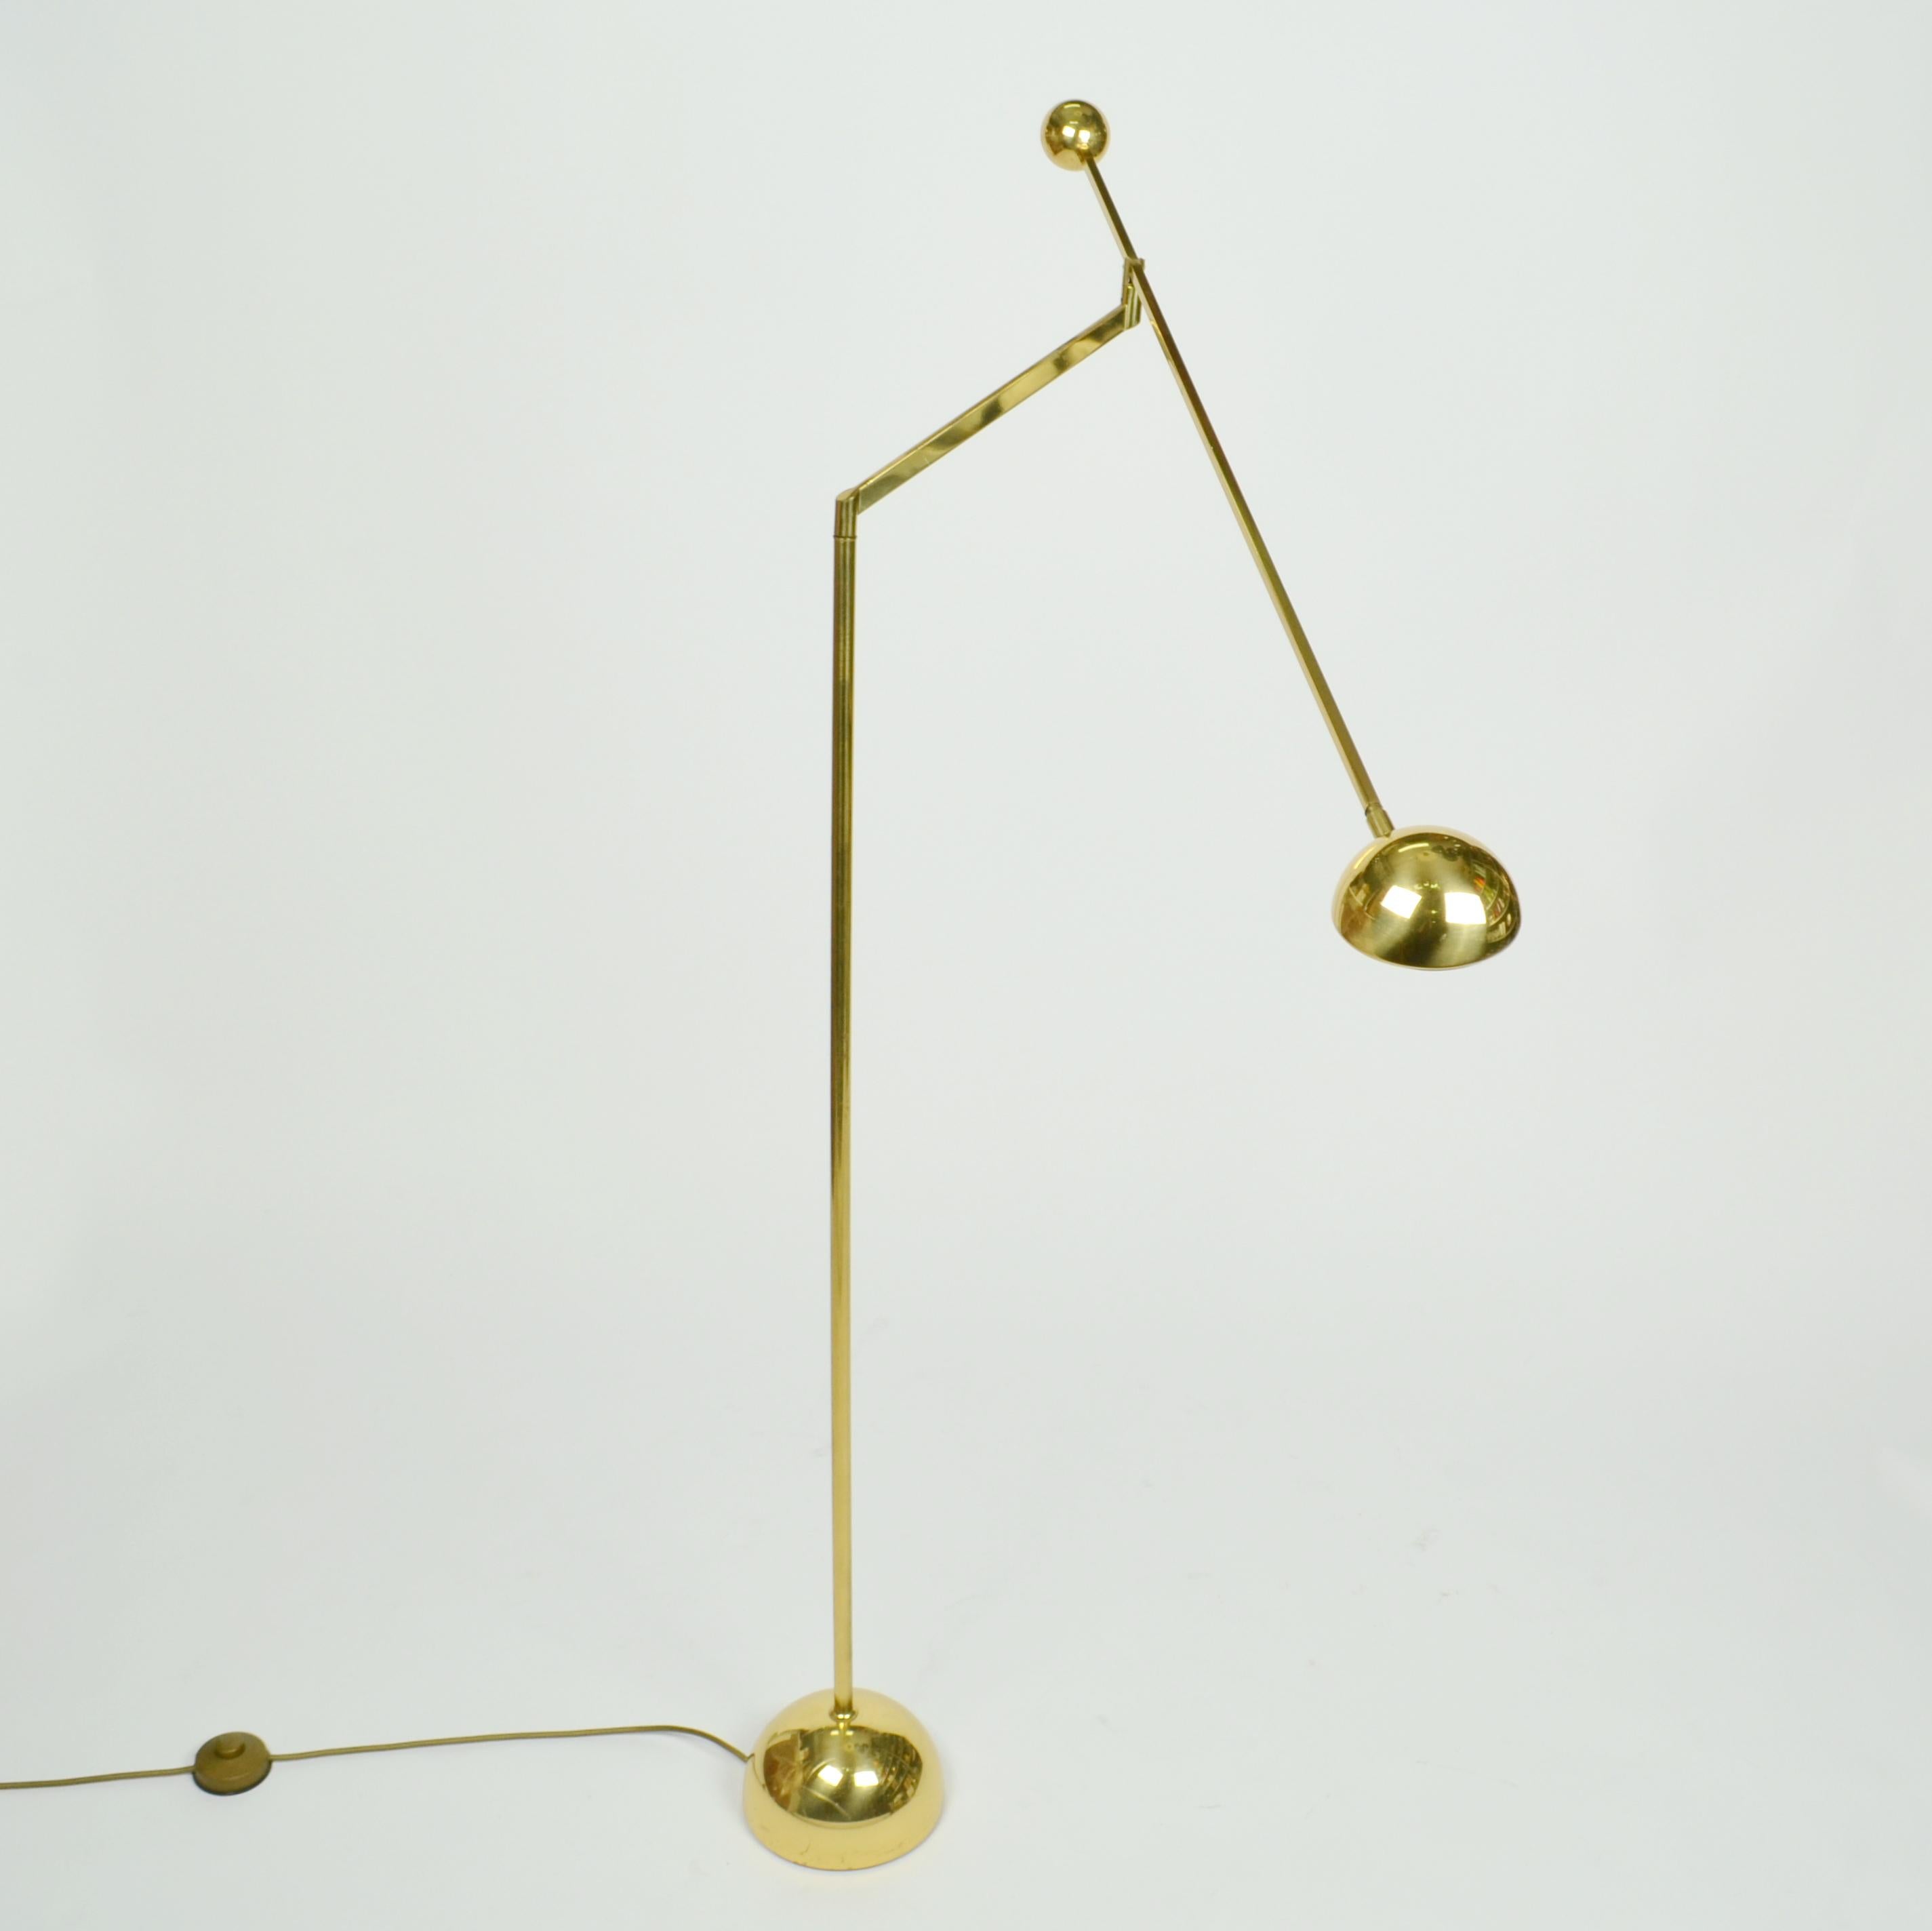 Le lampadaire minimaliste à contrepoids est très flexible, avec un bras réglable à près de 180 degrés. La source de lumière halogène est attachée à un long bras tenant un contrepoids sphérique. Le bras repose sur un support angulaire avec